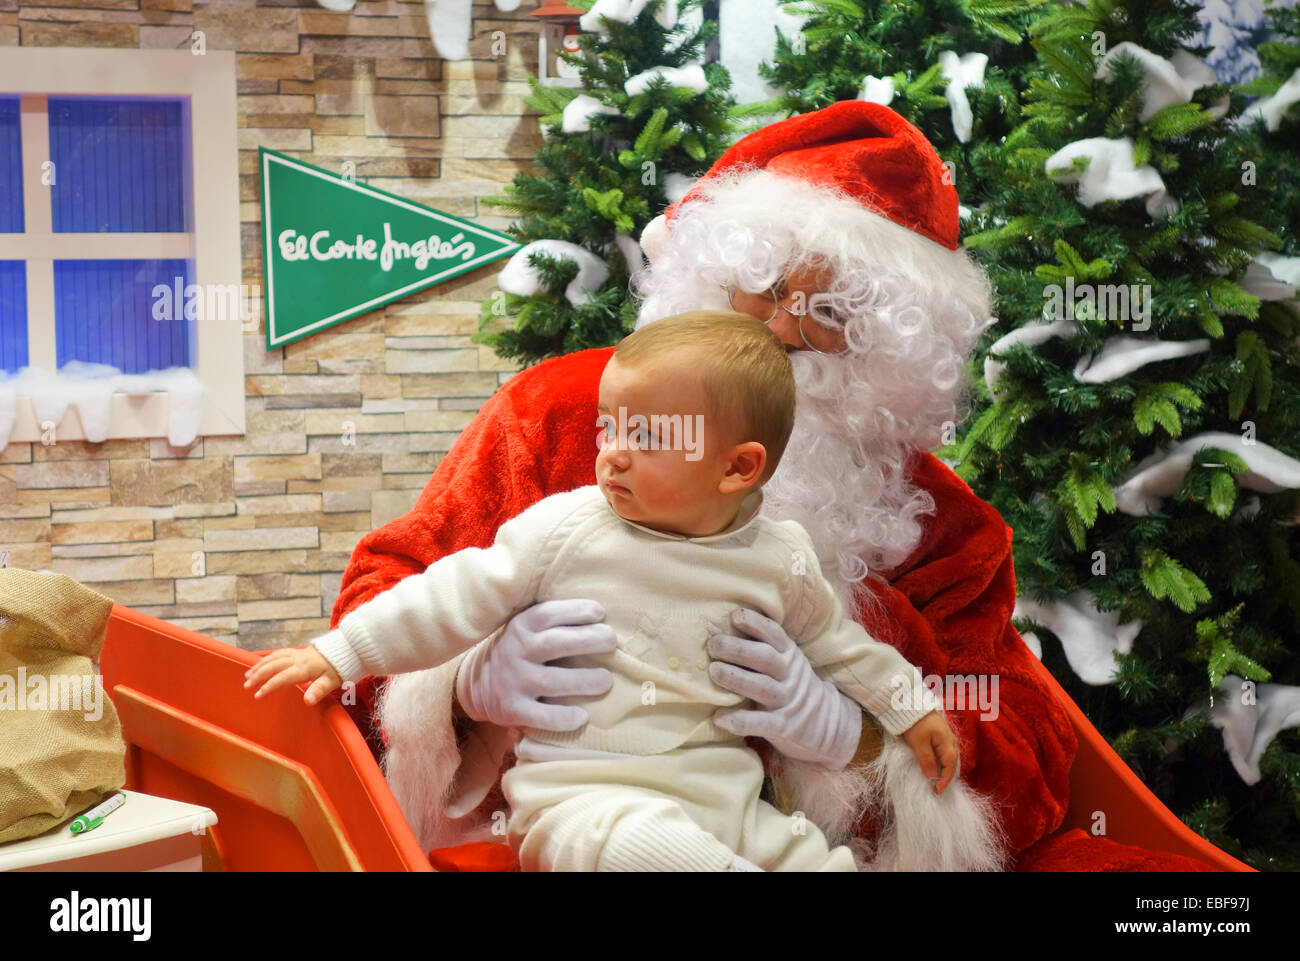 Weihnachtsmann am Einkaufszentrum mit Baby auf dem Schoß. El Corte Ingles, Spanien Stockfoto